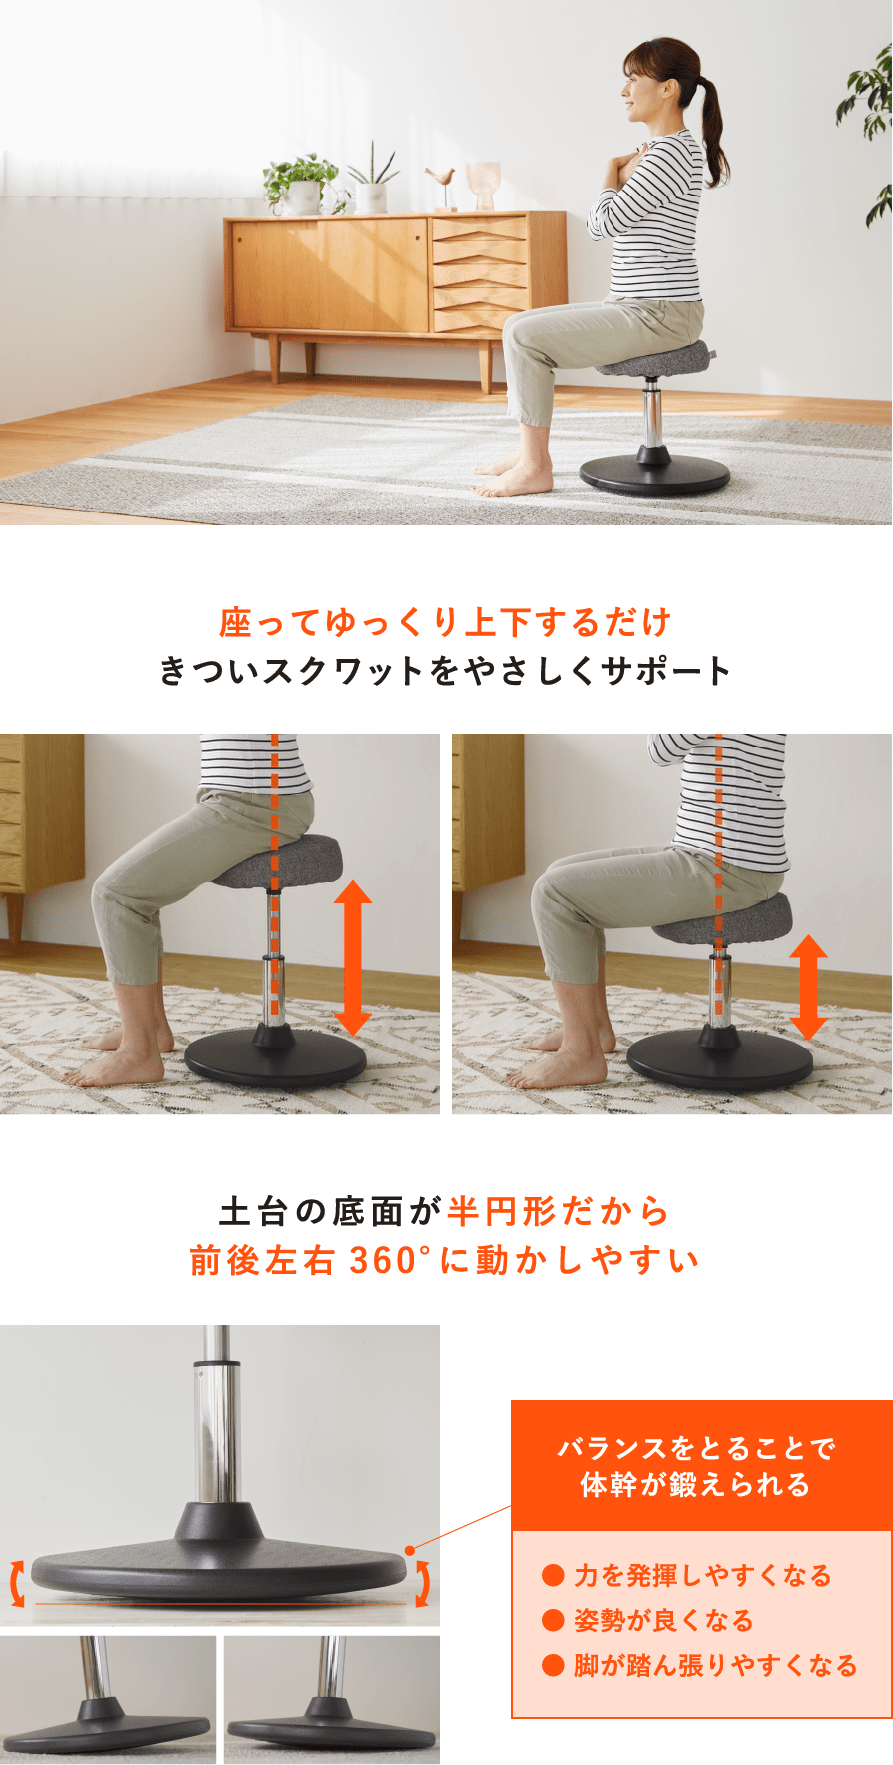 座ってゆっくり上下するだけきついスクワットをやさしくサポート 土台の底面が半円形だから前後左右360°に動かしやすい バランスをとることで体幹が鍛えられる● 力を発揮しやすくなる● 姿勢が良くなる● 脚が踏ん張りやすくなる